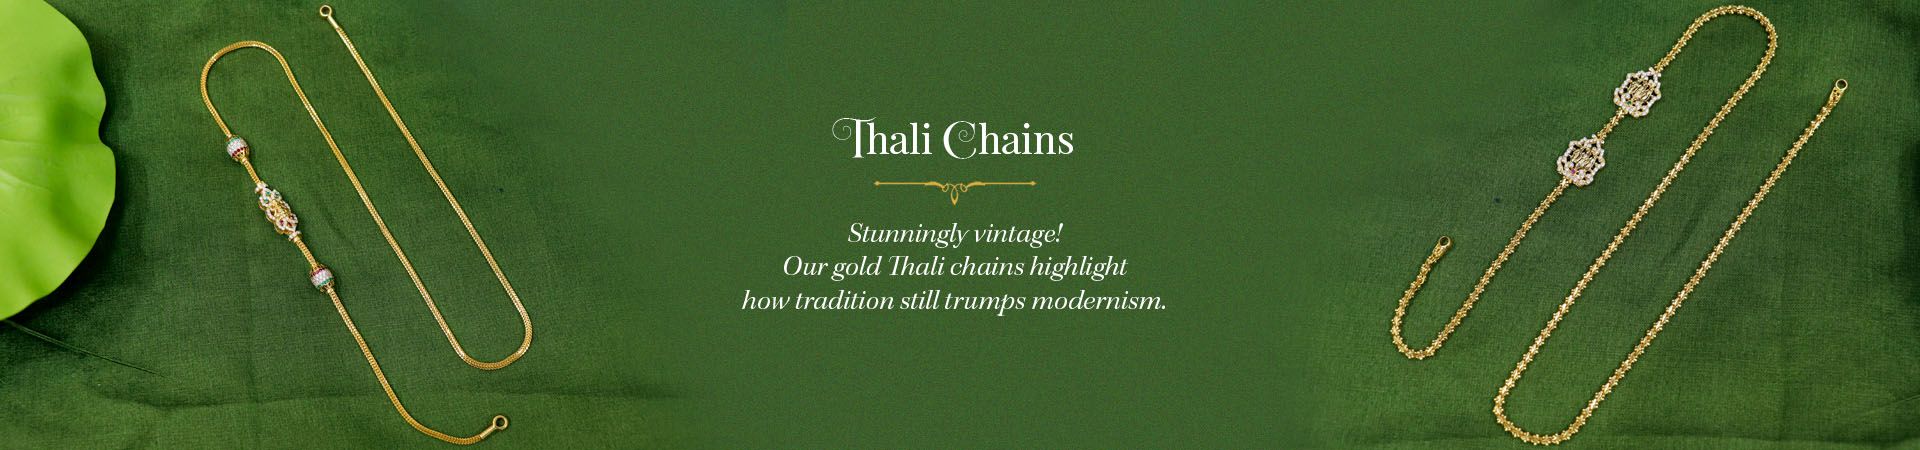 Thali Chains